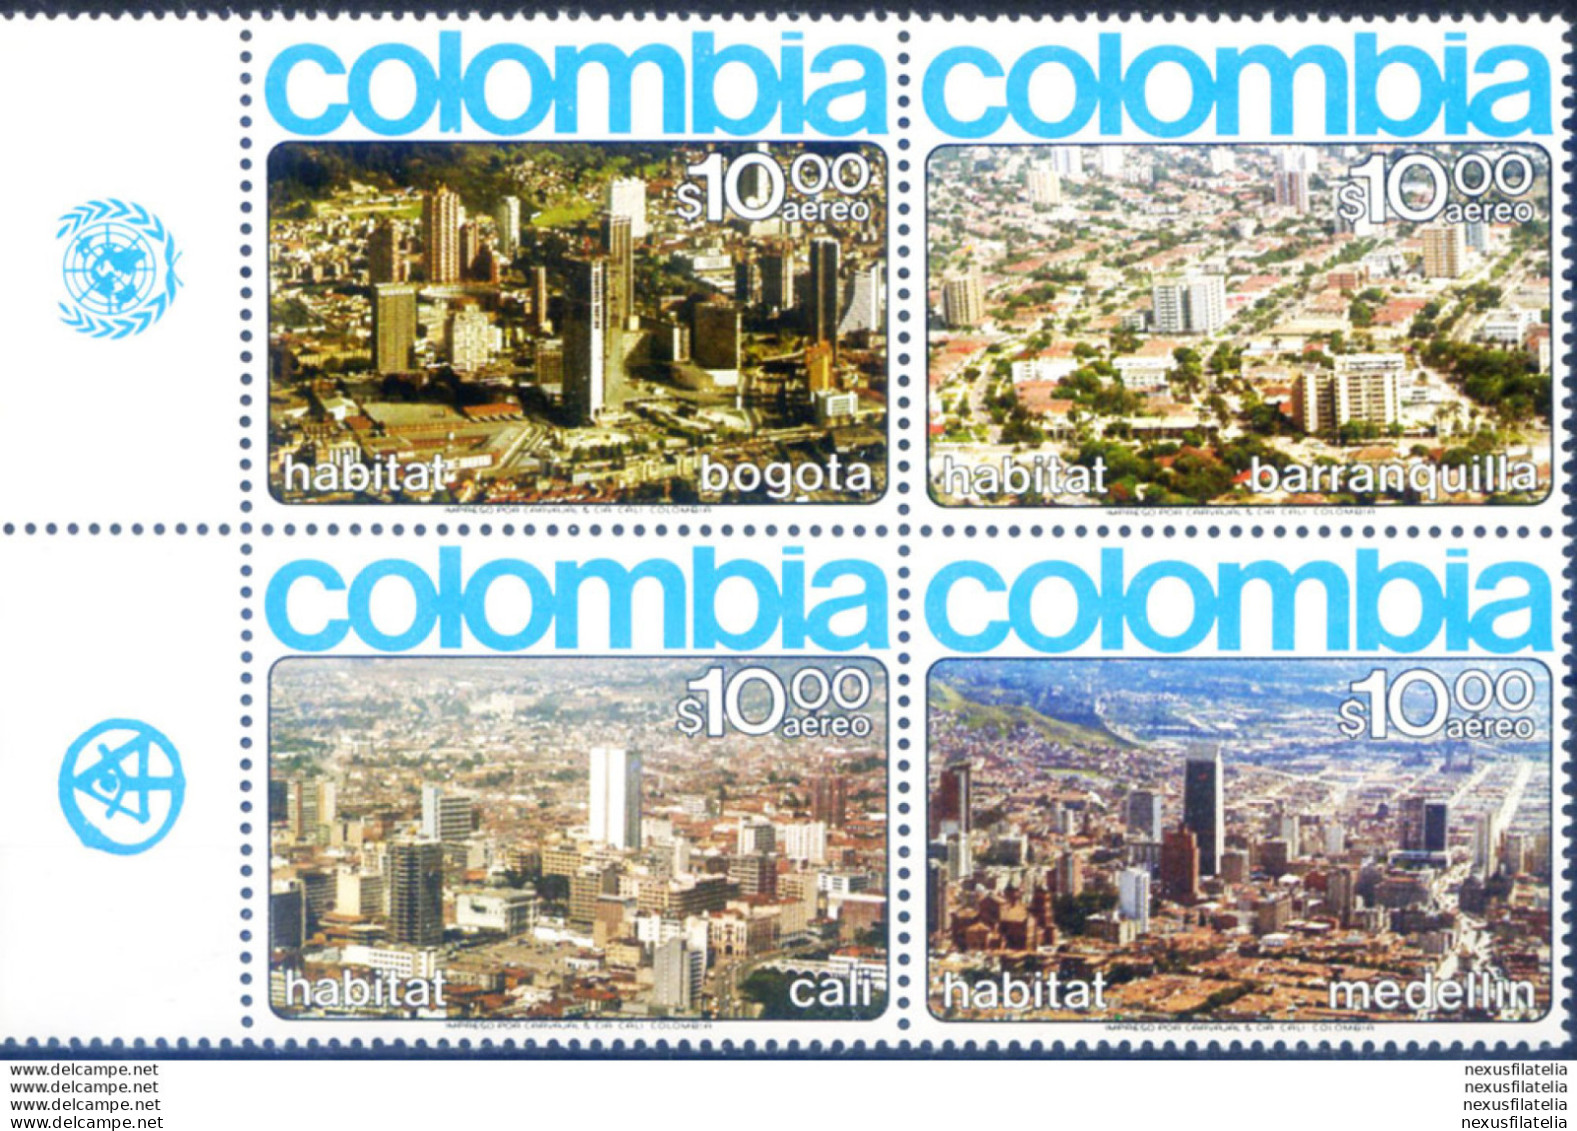 Panorami Di Bogotà 1976. - Colombie